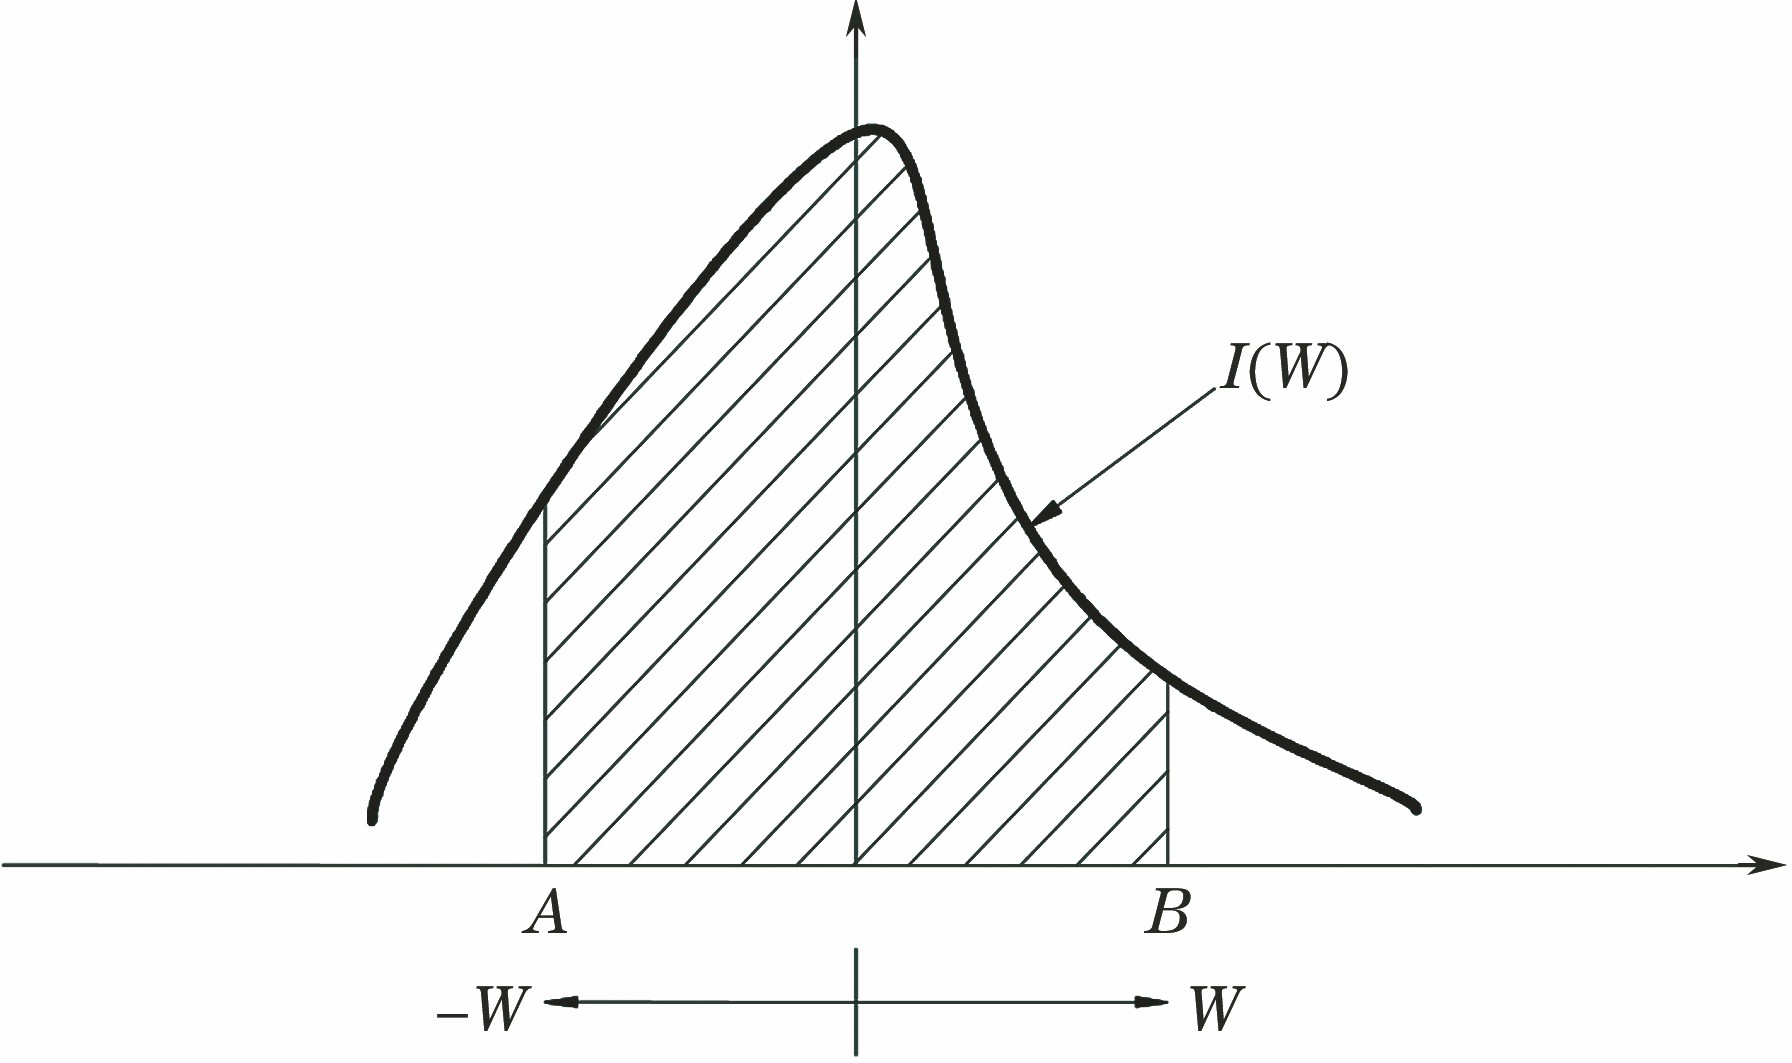 Normal distribution curve of energy flux density